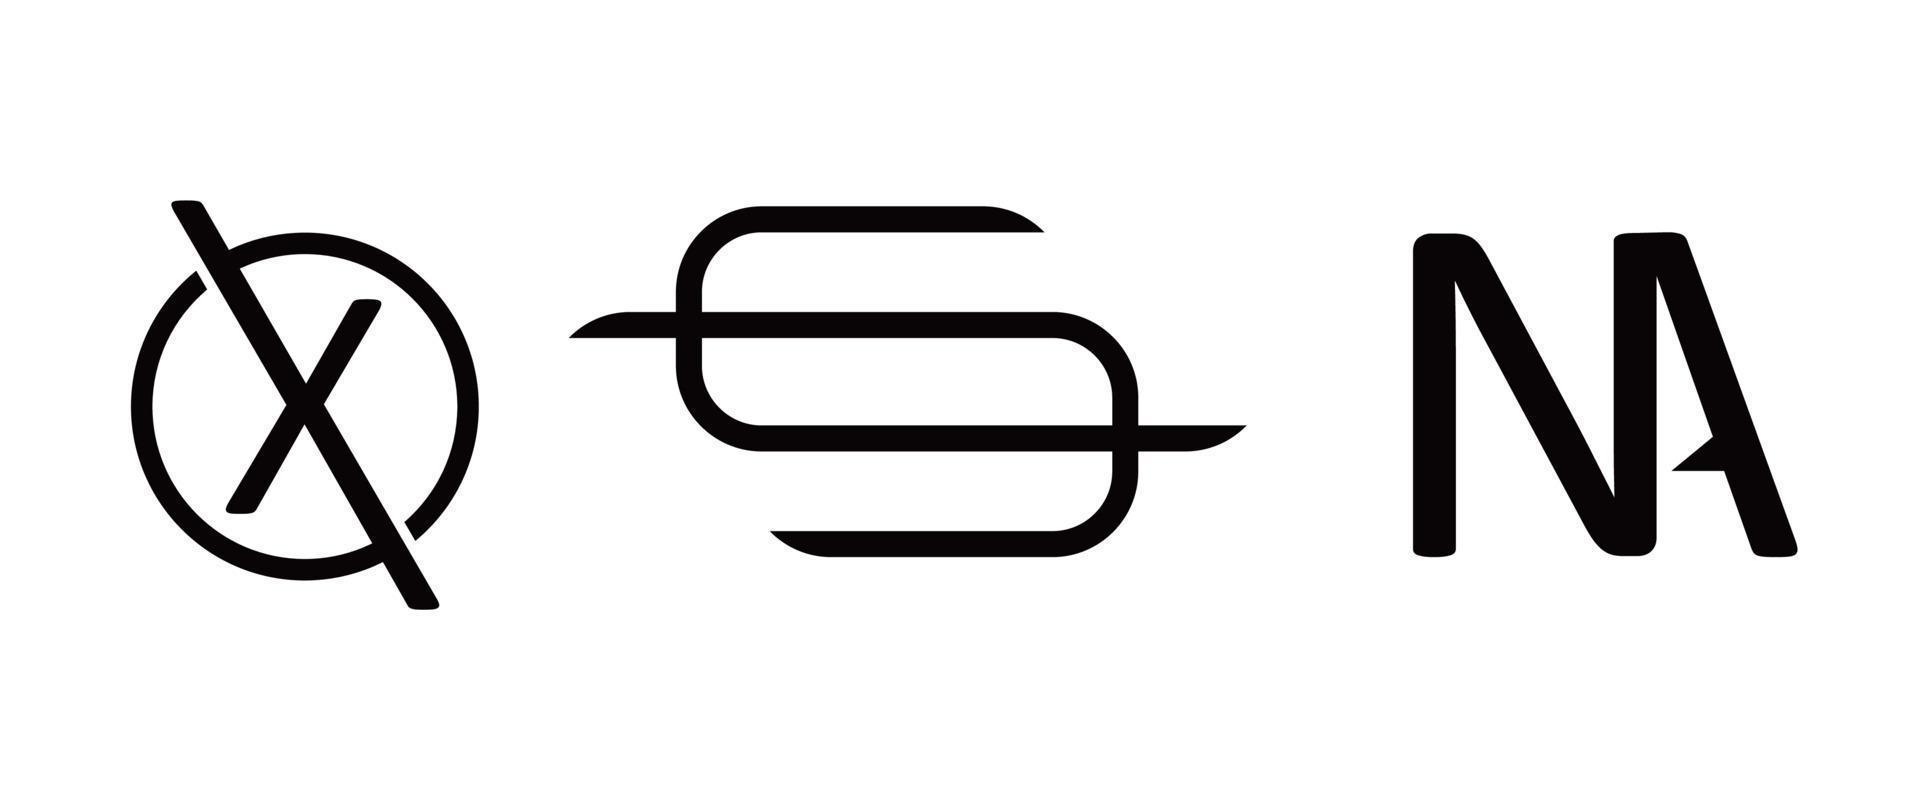 monograma simple y elegante vector